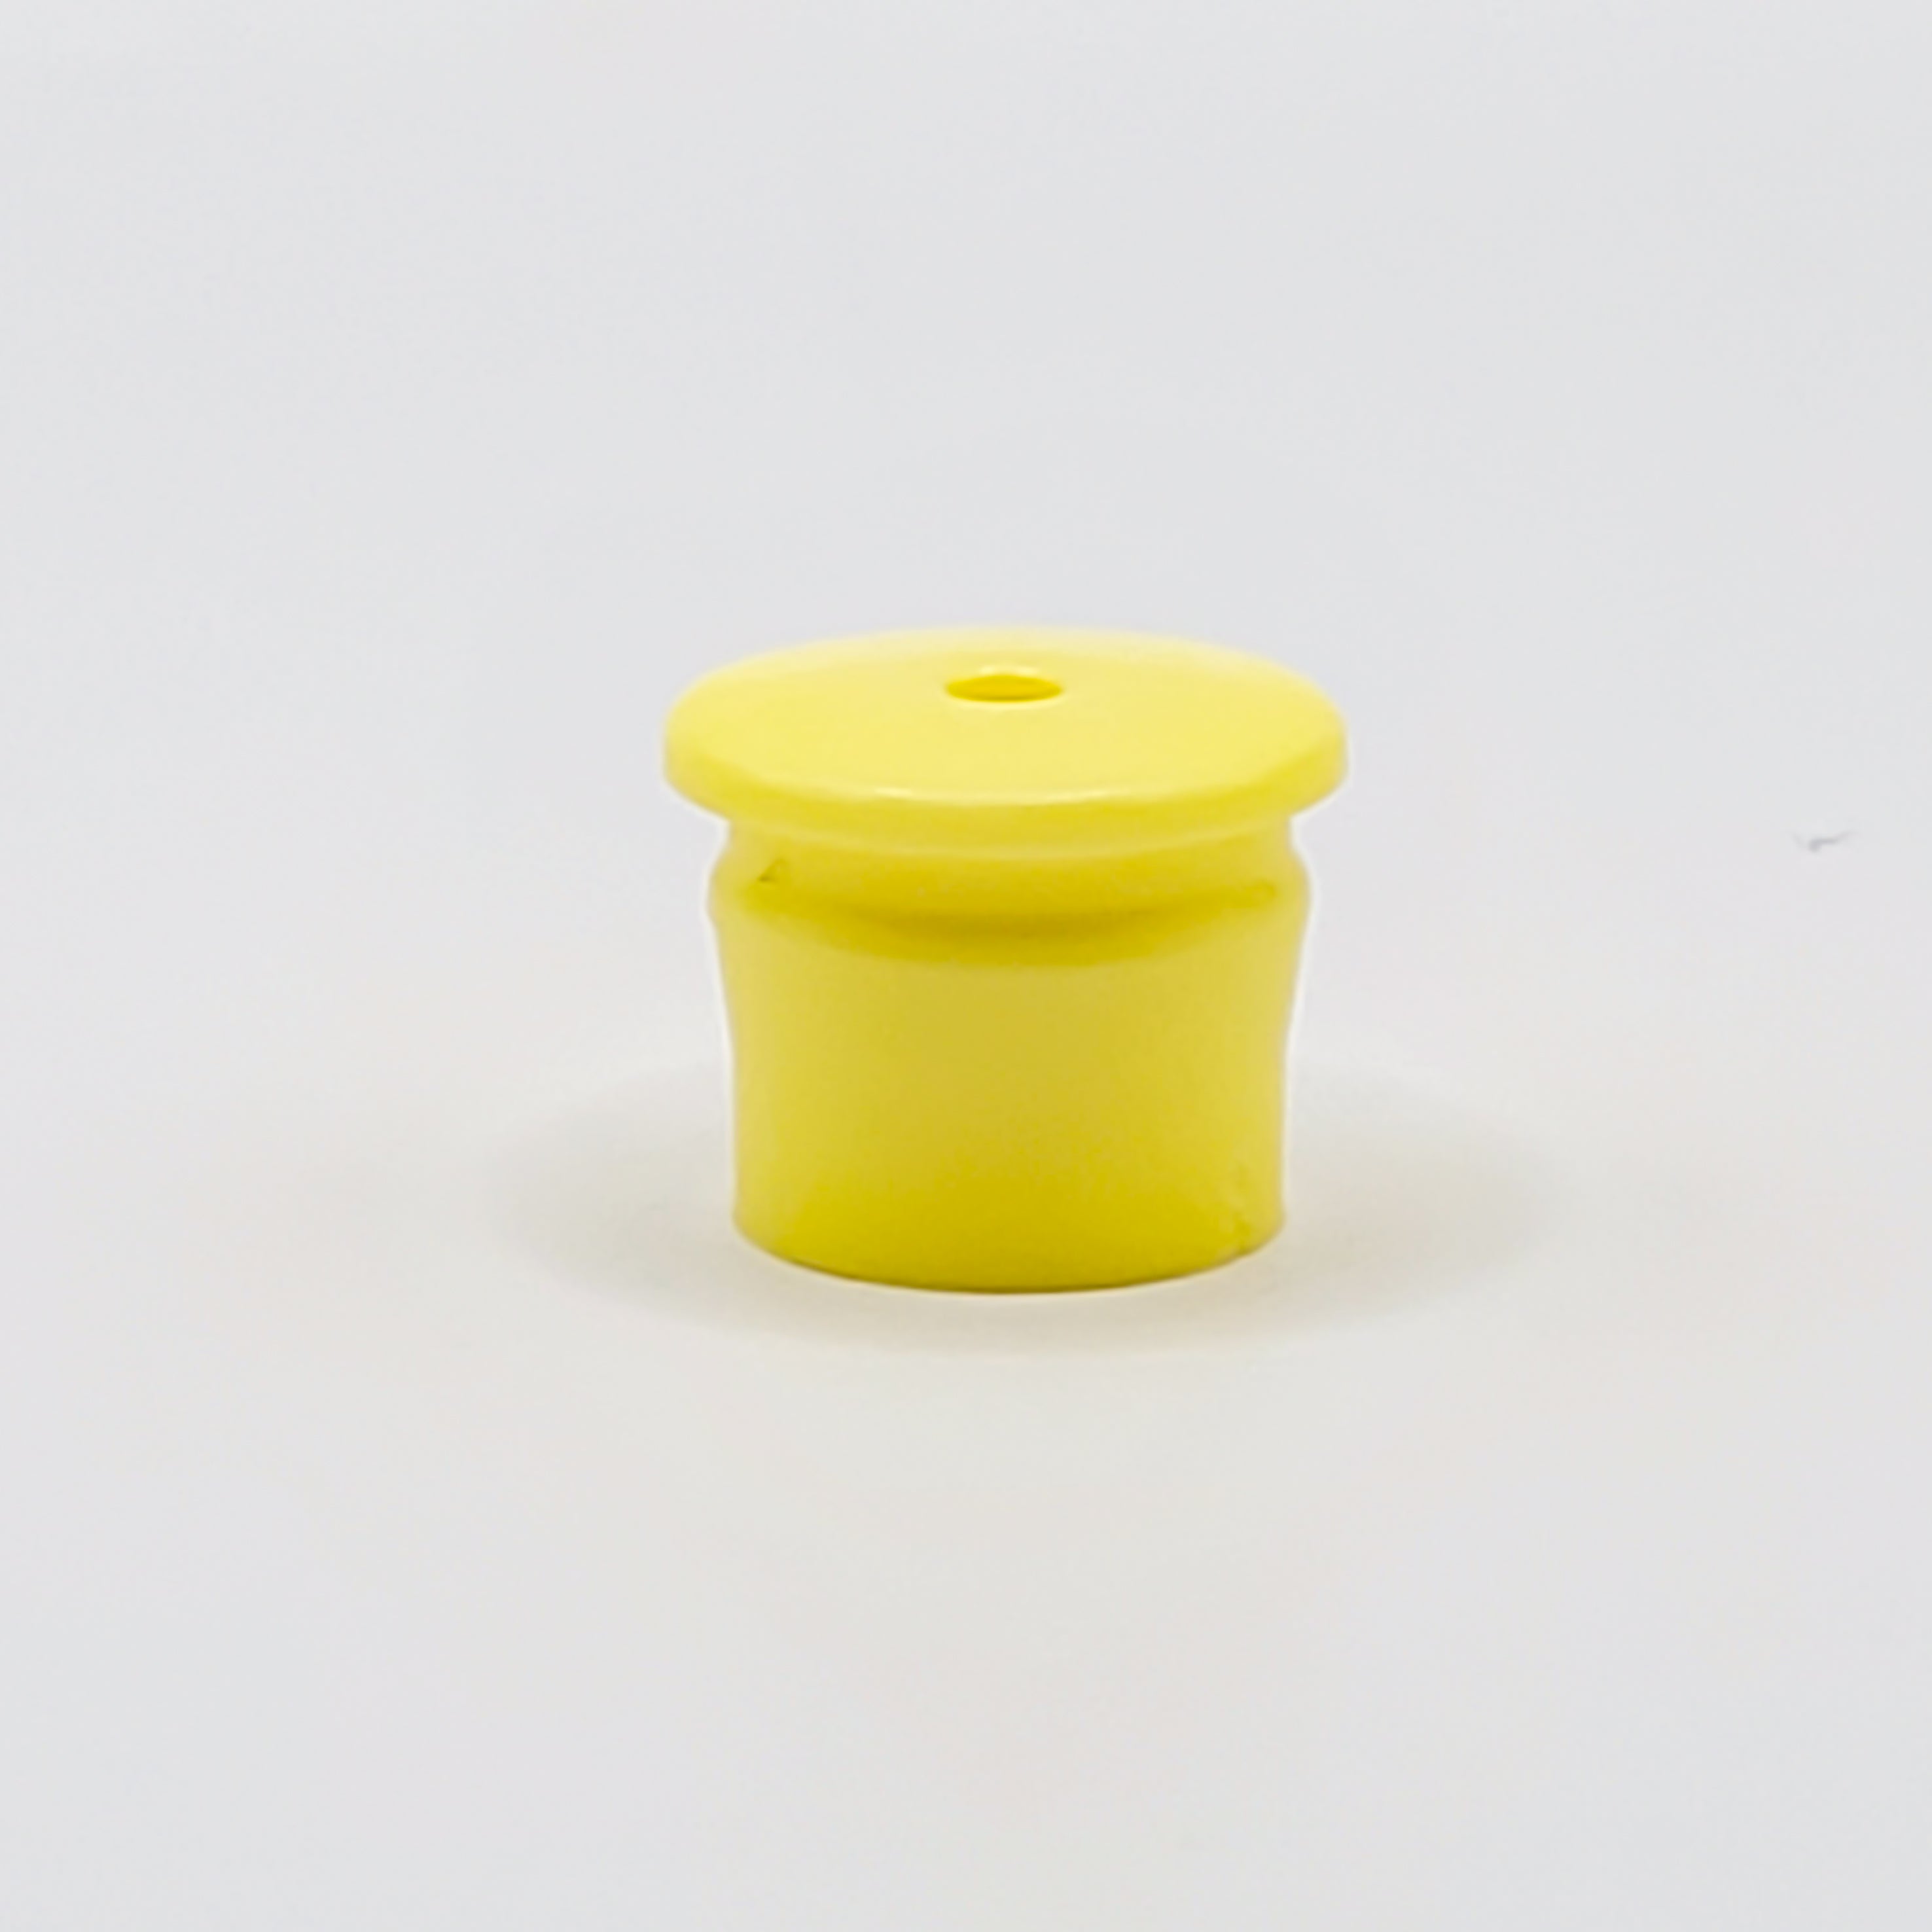 Unguator Varionozzle - 2mm (Yellow)